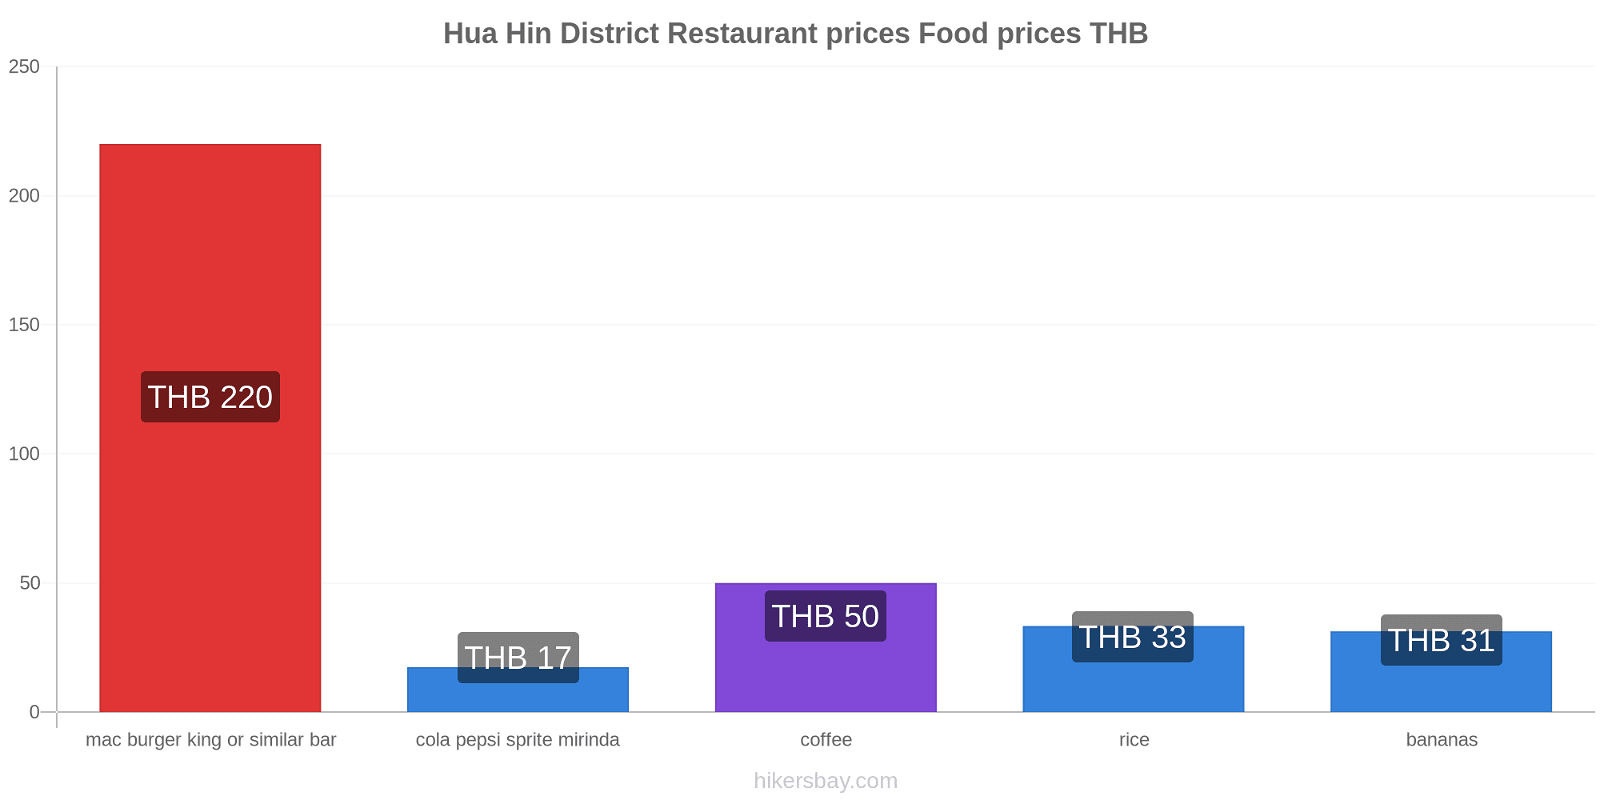 Hua Hin District price changes hikersbay.com